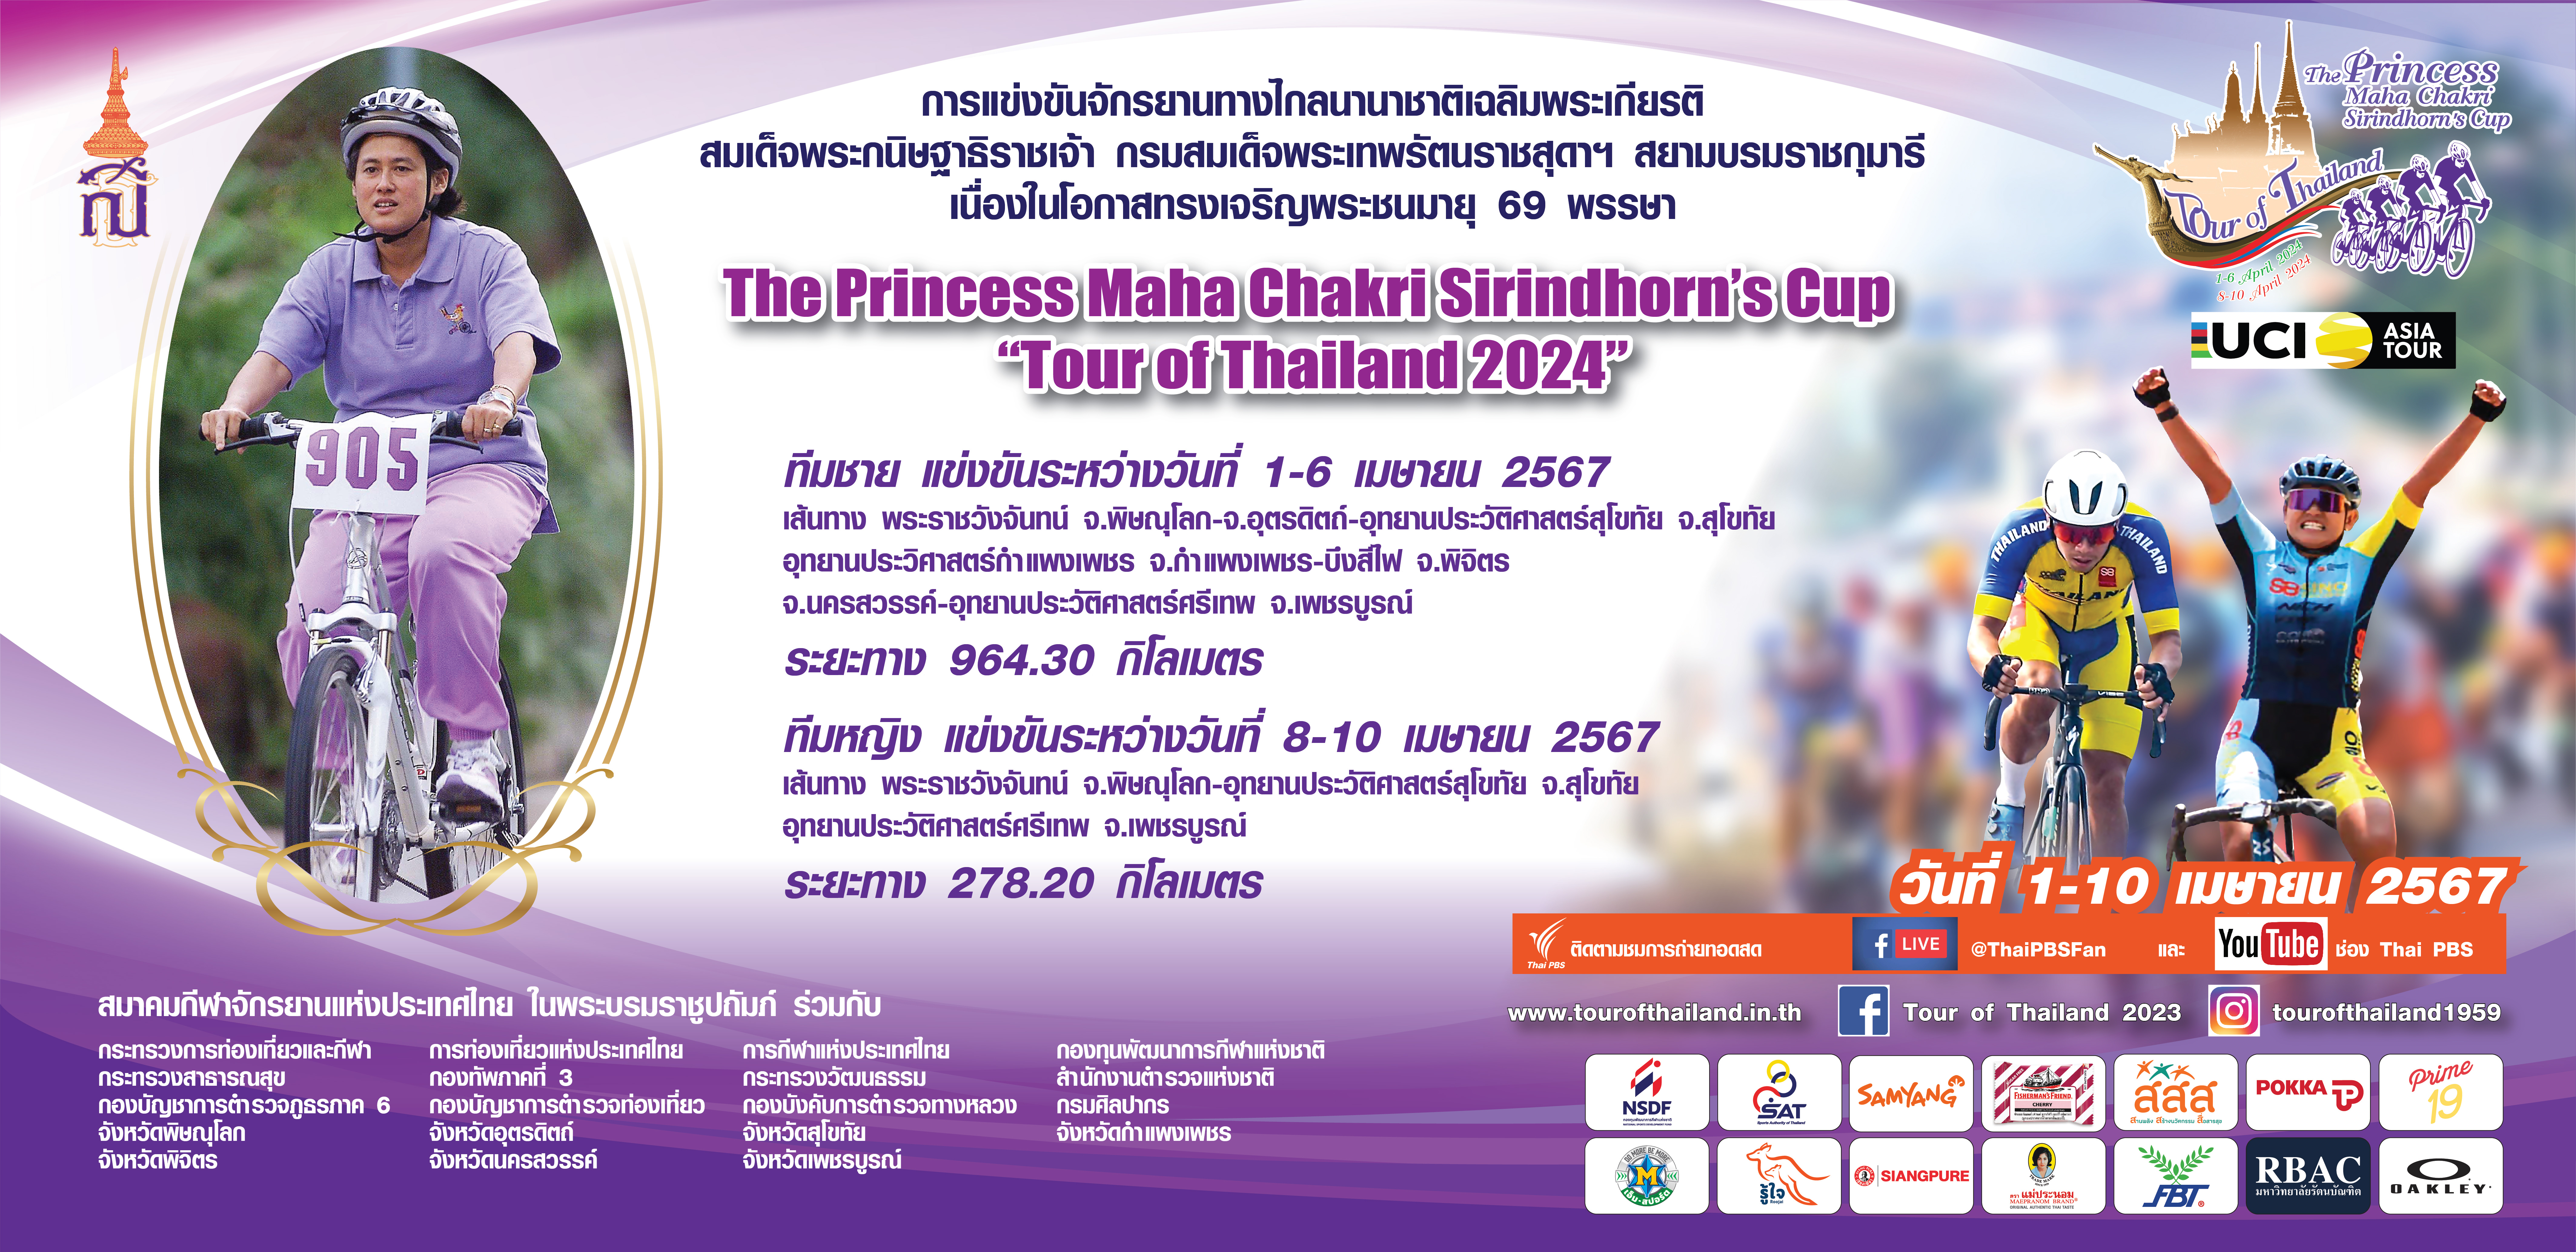 การแข่งขันจักรยานทางไกลนานาชาติเฉลิมพระเกียรติ สมเด็จพระกนิษฐาธิราชเจ้า กรมสมเด็จพระเทพรัฒนราชสุดาฯ สยามบรมราชกุมารี เนื่องในโอกาสทรงเจริญพระชนมายุ 69 พรรษา The Princess Maha Chakri Sirindhorn's Cup "Tour of Thailand 2024"